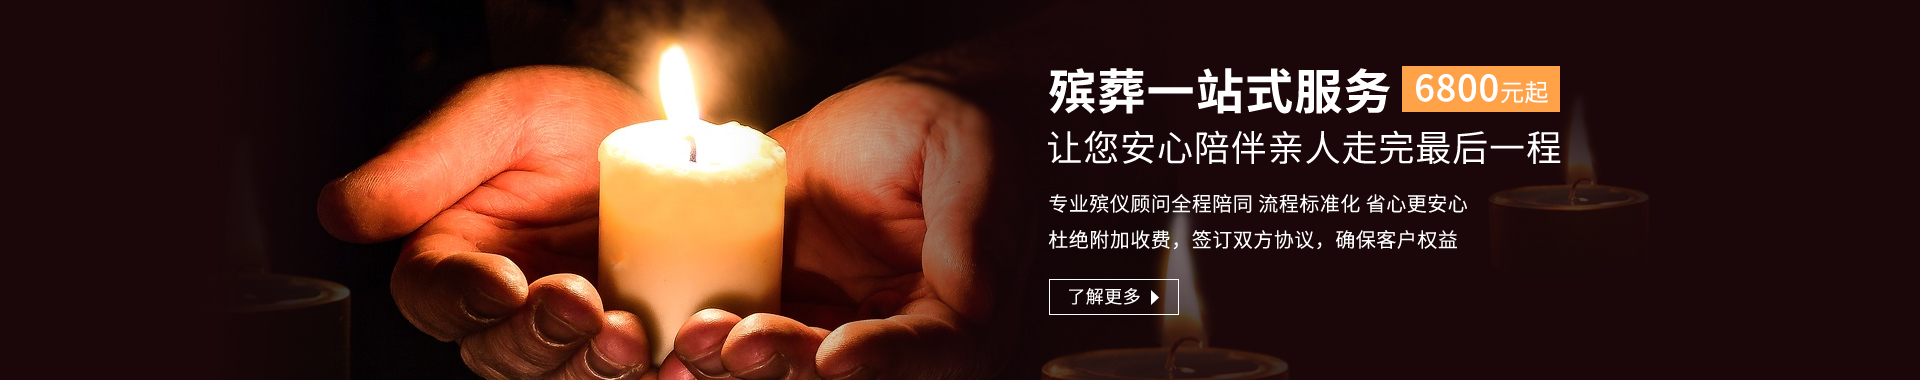 北京一站式殡葬服务平台